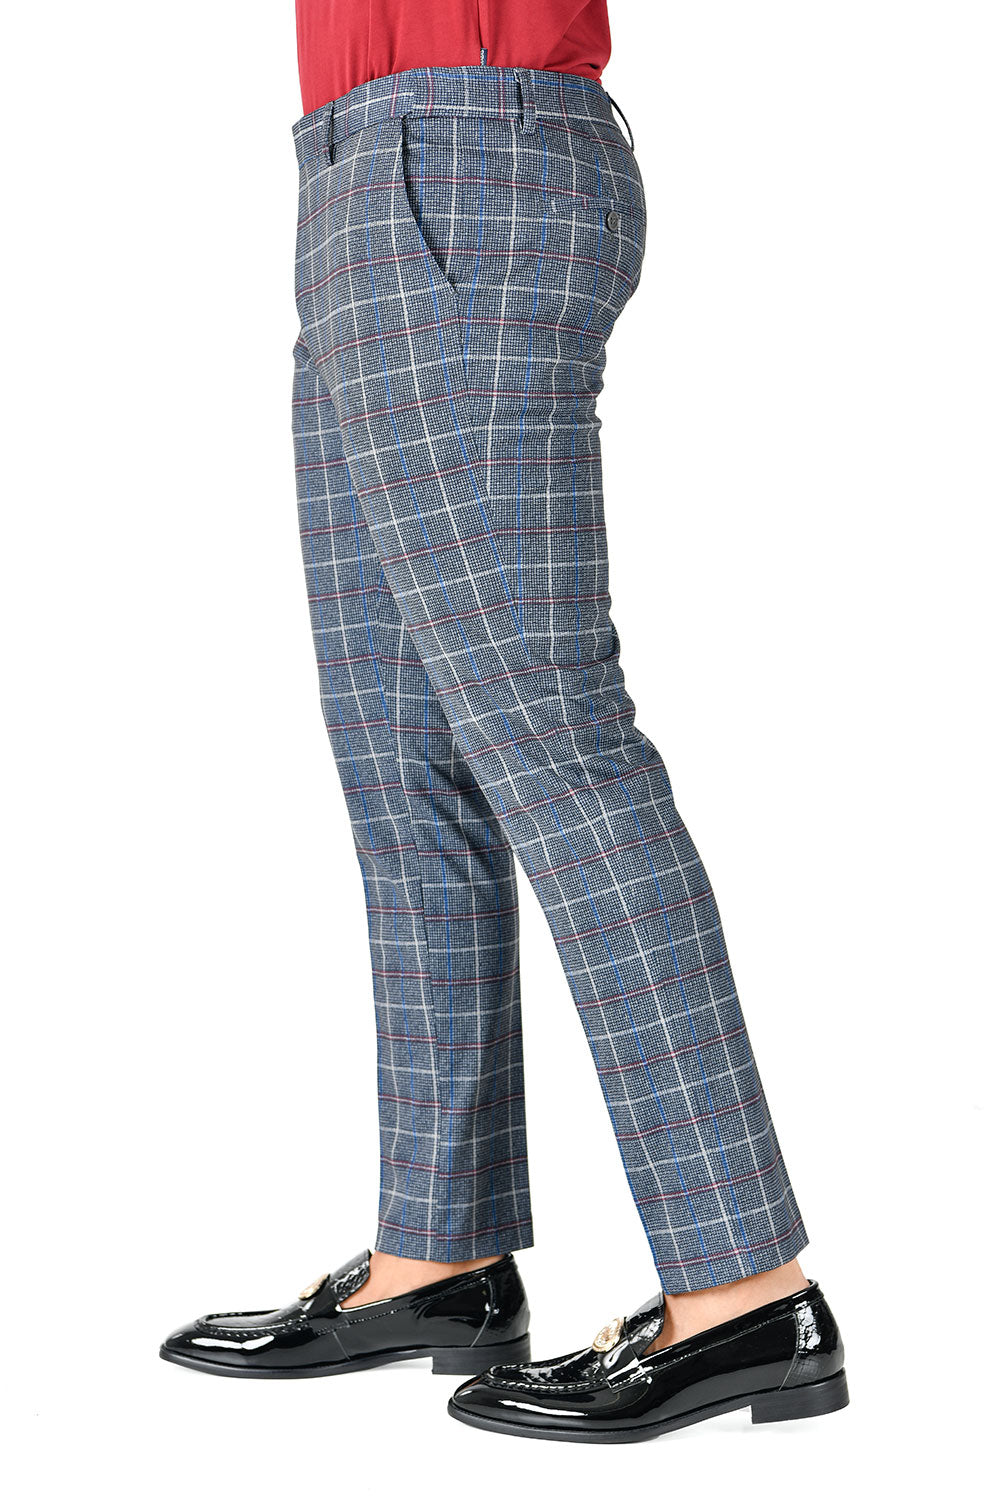 BARABAS men's checkered plaid grey pink chino dress pants CP124